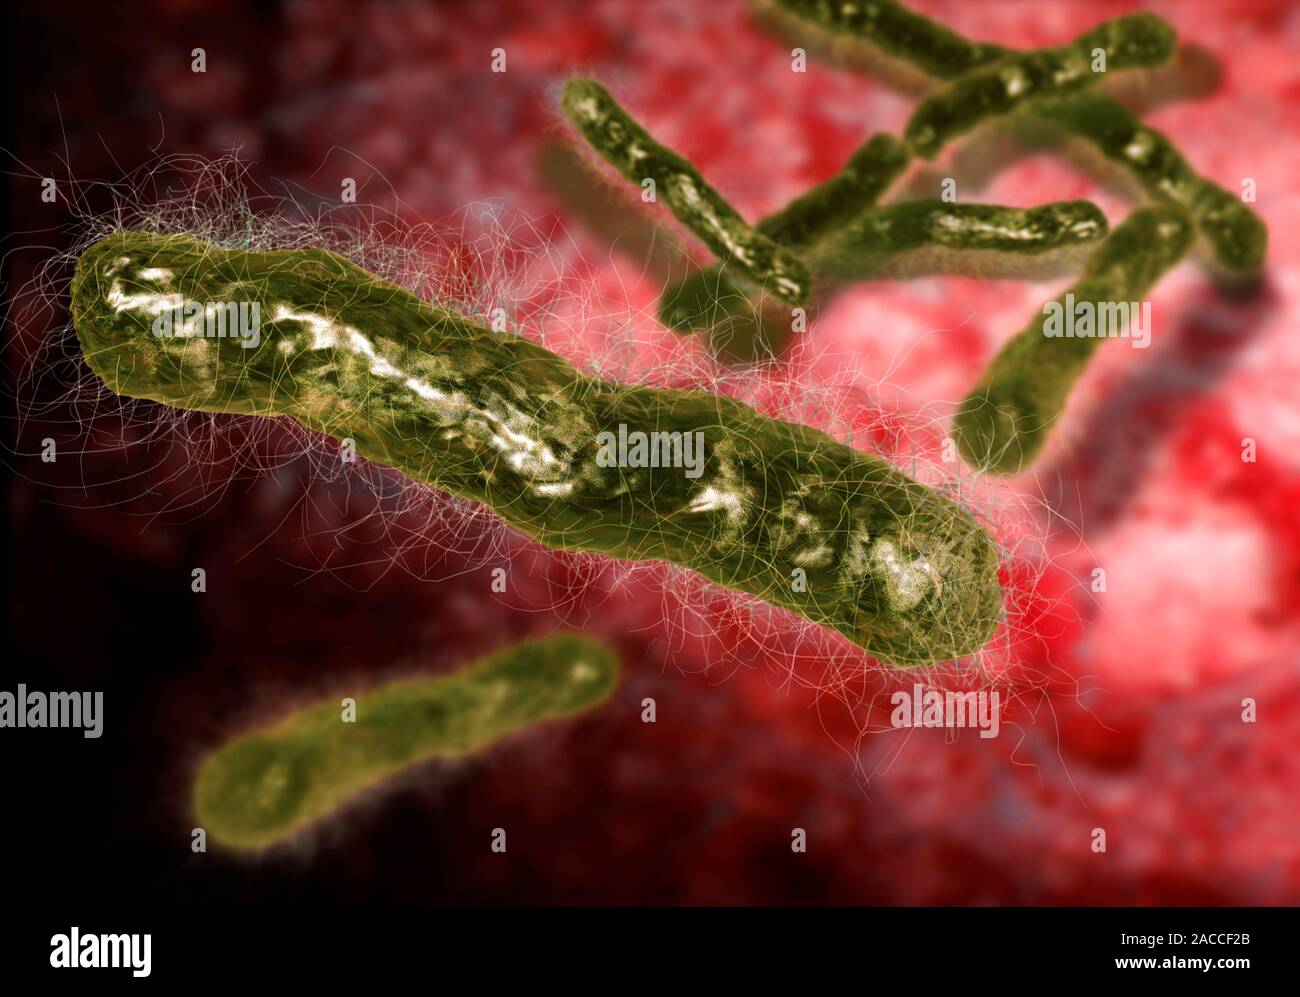 Бактерия вызывающая язву. Бацилла антрацис. Сибирская язва возбудитель бактерия. Bacillus anthracis, а22 (Сибирская язва).